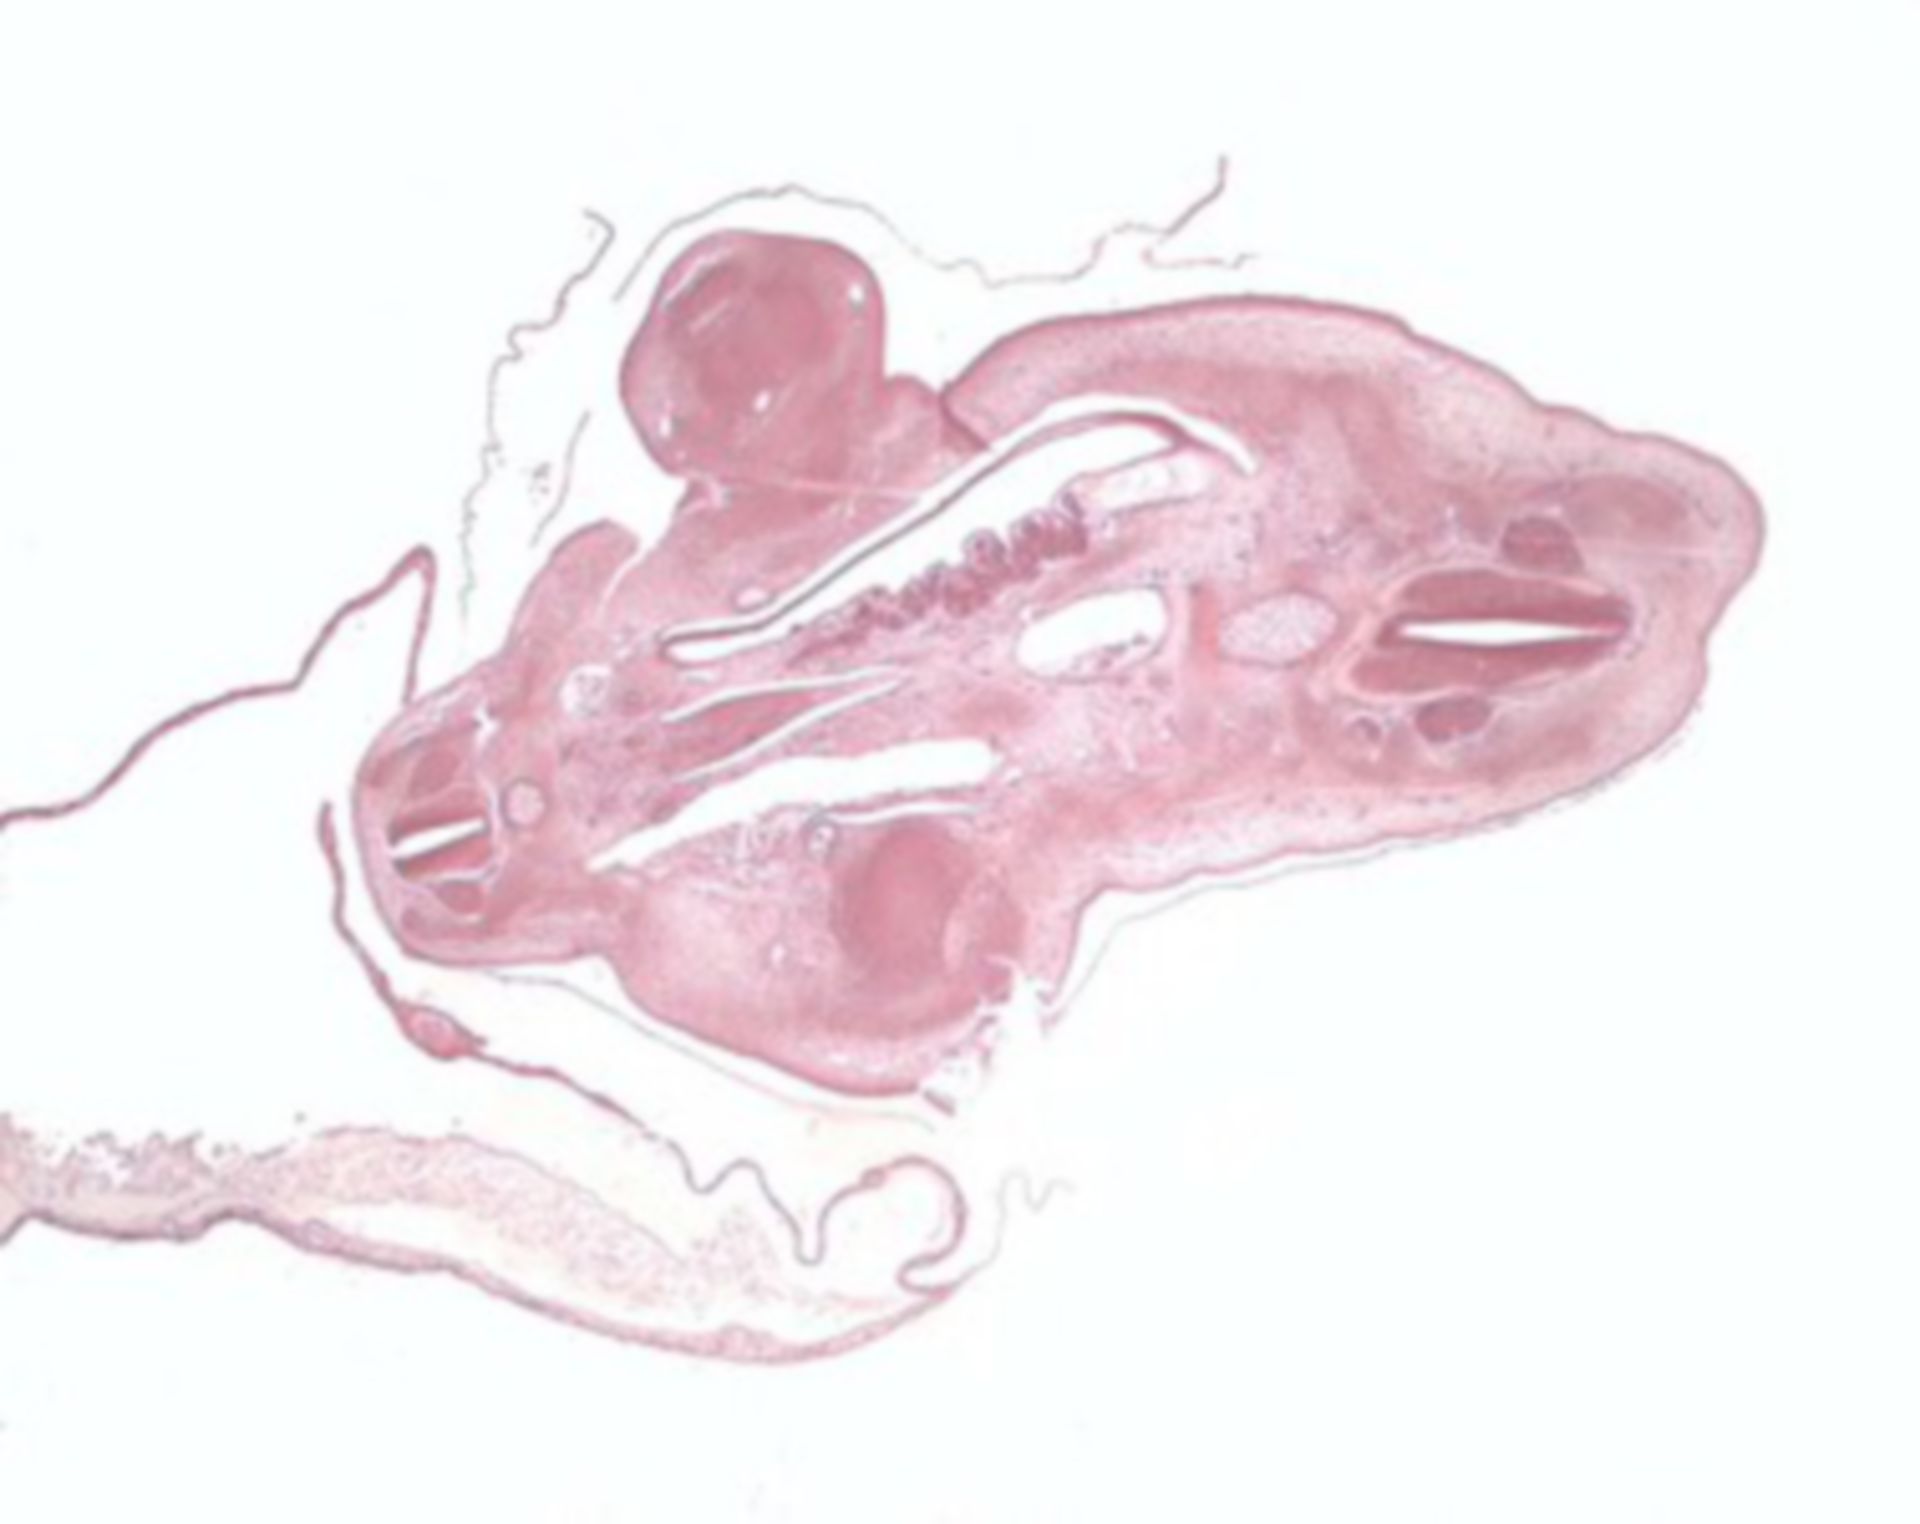 Mesenchymal connective tissue - chicken embryo